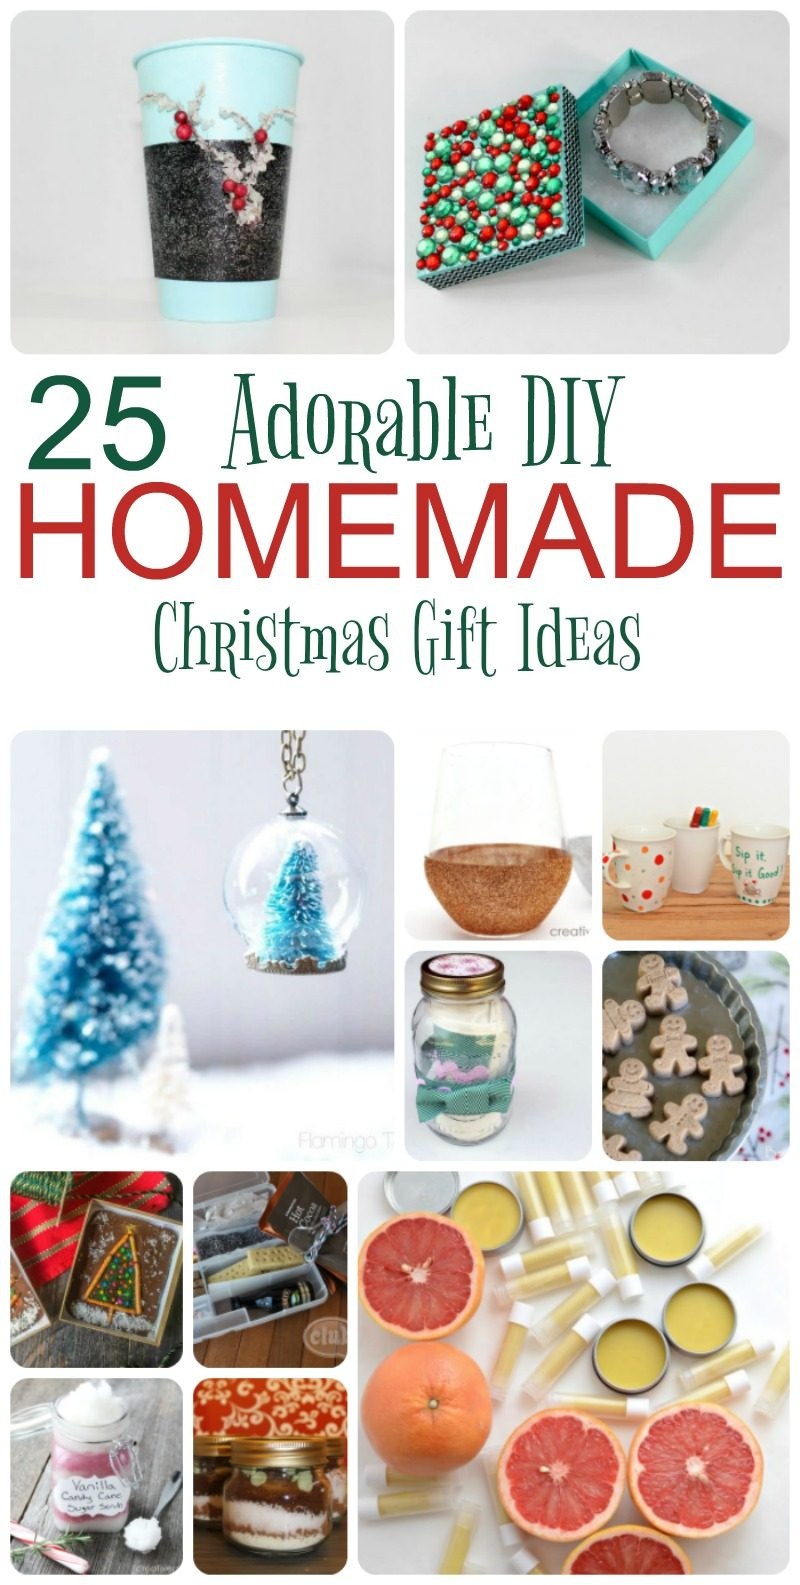 Homemade Christmas Gifts For Kids To Make
 25 Adorable Homemade Gifts to Make for Christmas Pretty